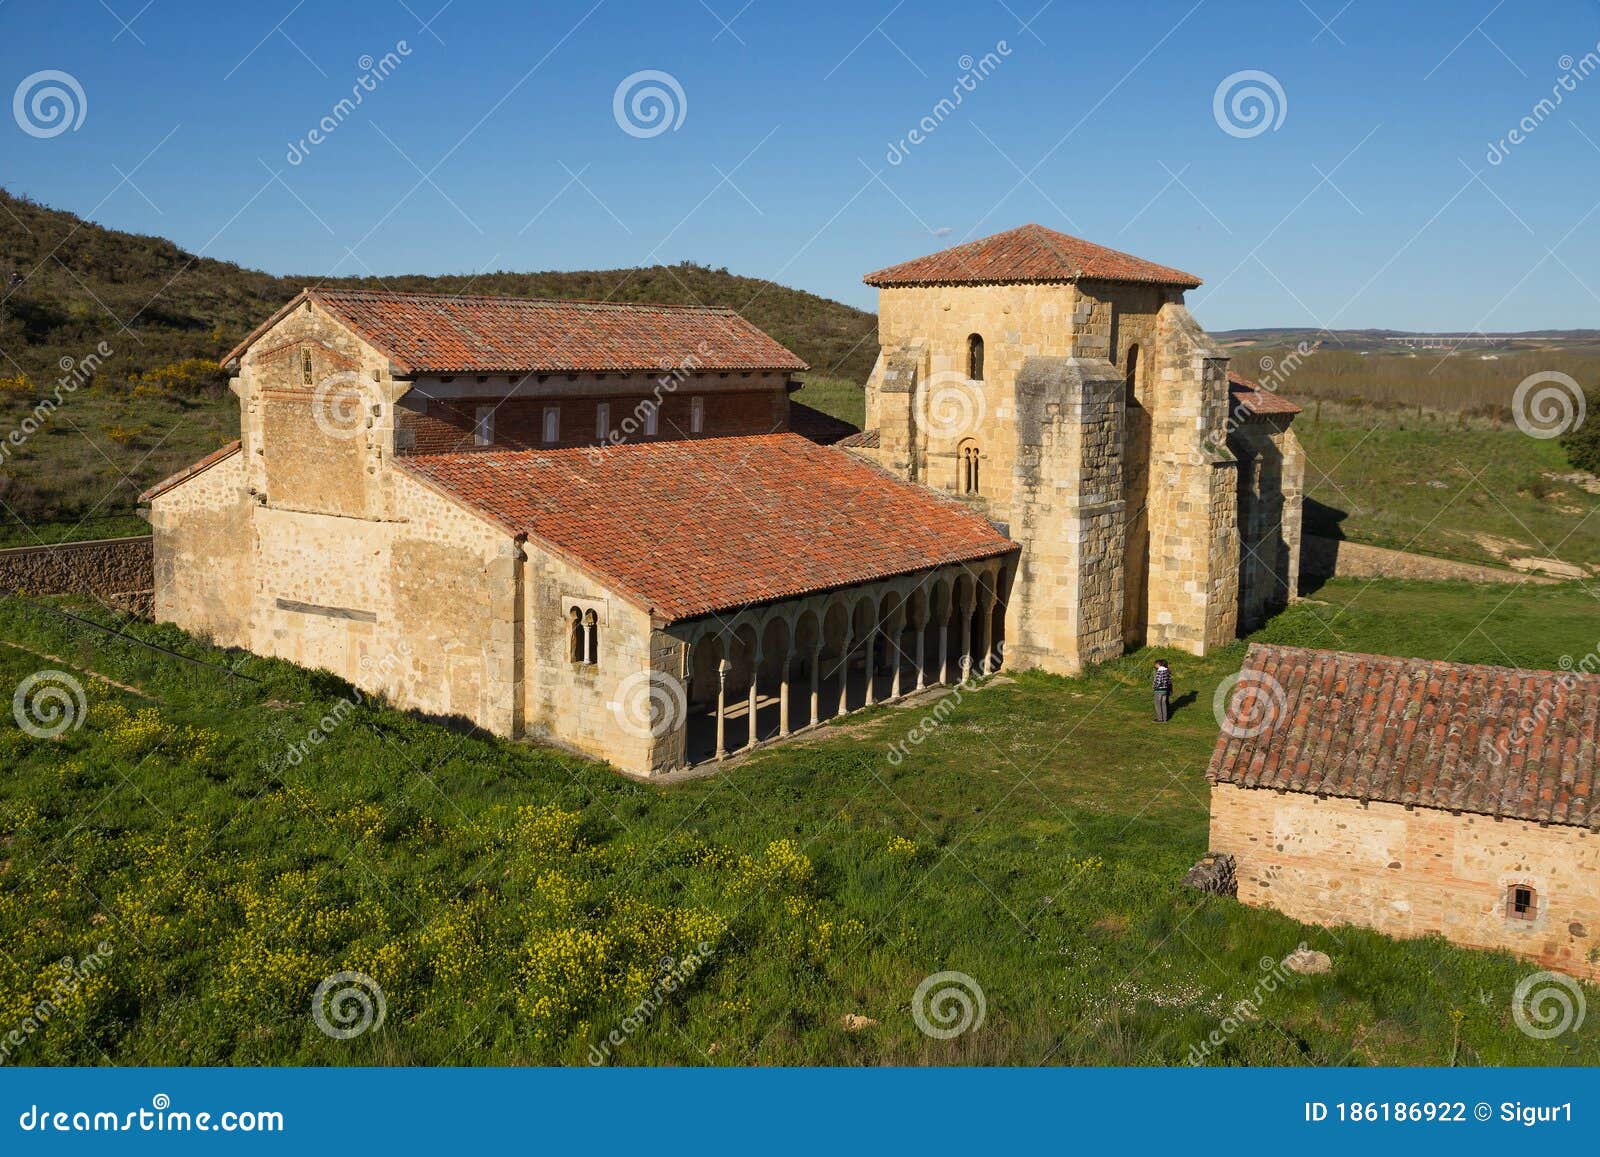 monastery of san miguel de escalada in leon spain